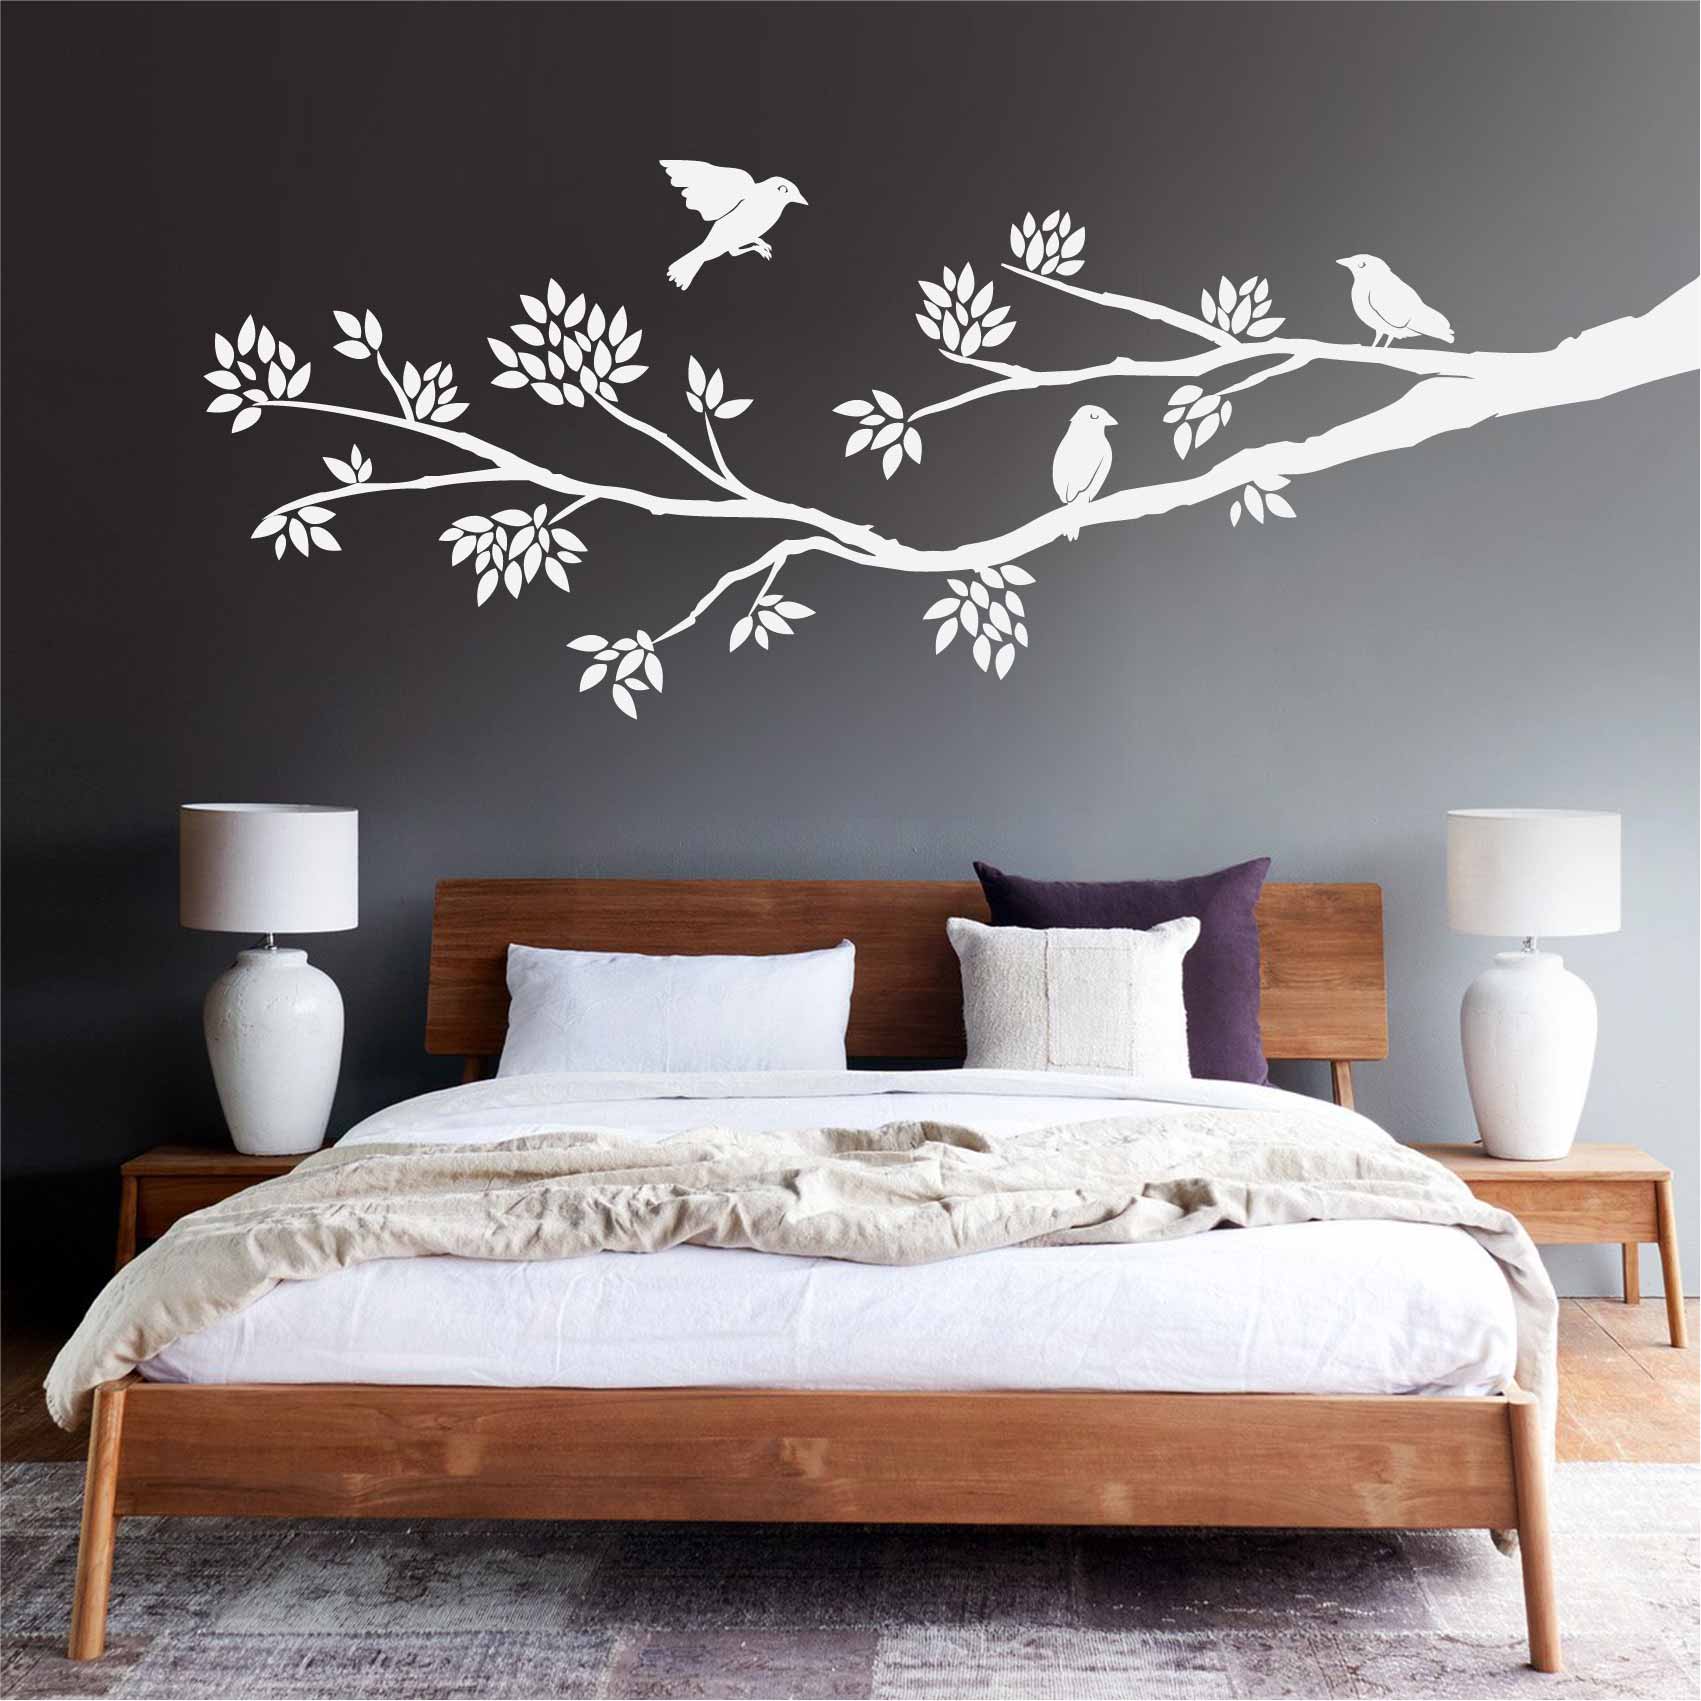 https://media.cdnws.com/_i/61411/2449/3479/53/stickers-branche-et-oiseaux-ref14branche-stickers-muraux-branche-autocollant-deco-salon-chambre-cuisine-sticker-mural-branches.jpeg